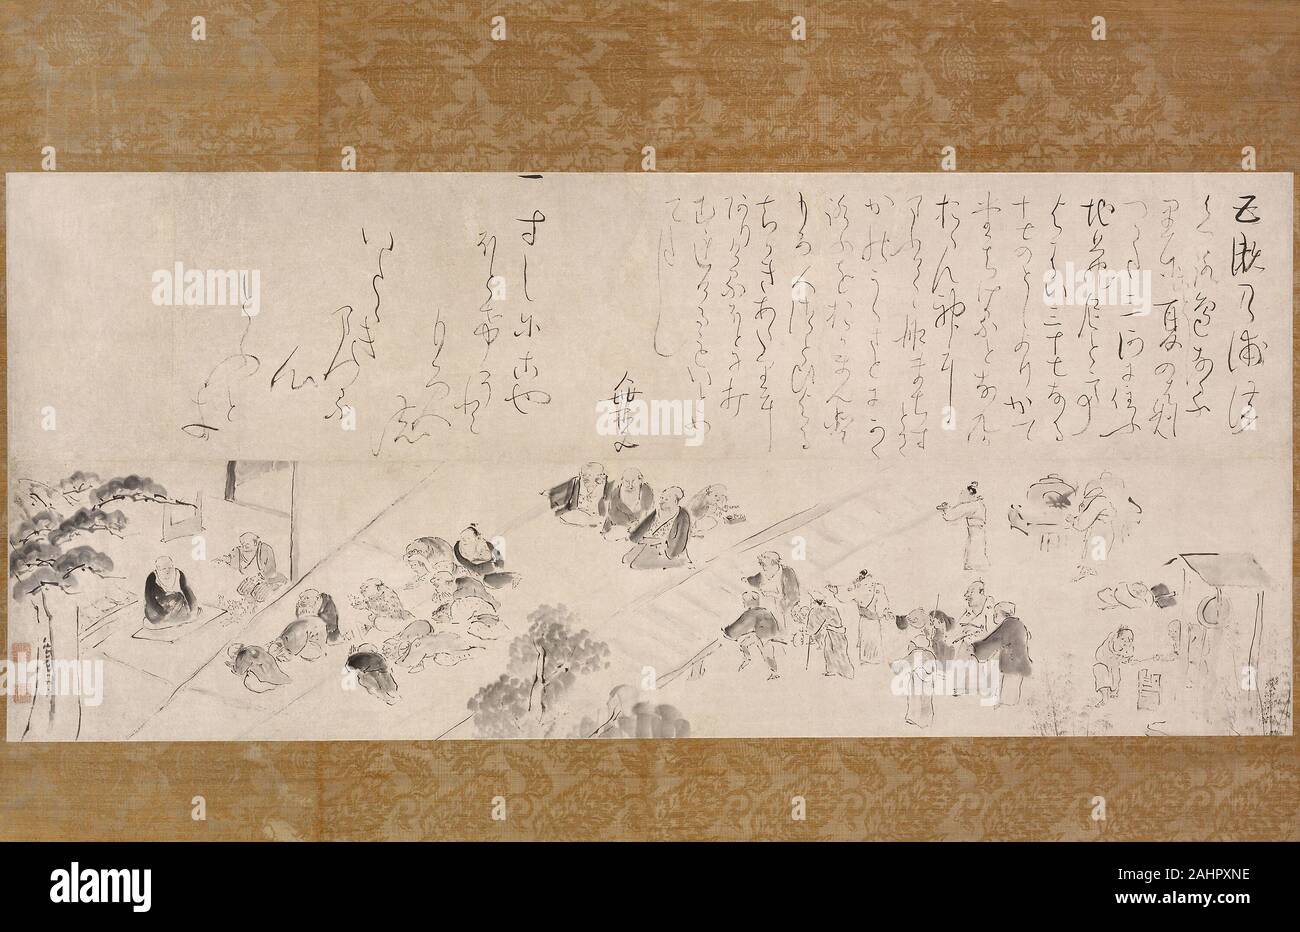 Taiga Ike. Pèlerinage au groupe Nun Jizo. 1750-1770. Le Japon. Défilement pendaison ; l'encre sur papier Taiga Ike était un révolutionnaire connu pour la revitalisation de la peinture japonaise traditions au dix-huitième siècle. Il a infusé la peinture d'encre d'inspiration chinoise (nanga) en faveur parmi les intellectuels à Kyoto avec un caractère purement esthétique japonaise et l'humour. Pèlerinage au groupe Nun Jizo est un instantané de la vie contemporaine au Japon a présenté à partir de la perspective unique de la taïga. L'Illustre les pèlerins en faisant des offrandes à la nonne Jizo, une sainte femme que l'on croit être en mesure de communiquer avec le bodhisattva Banque D'Images